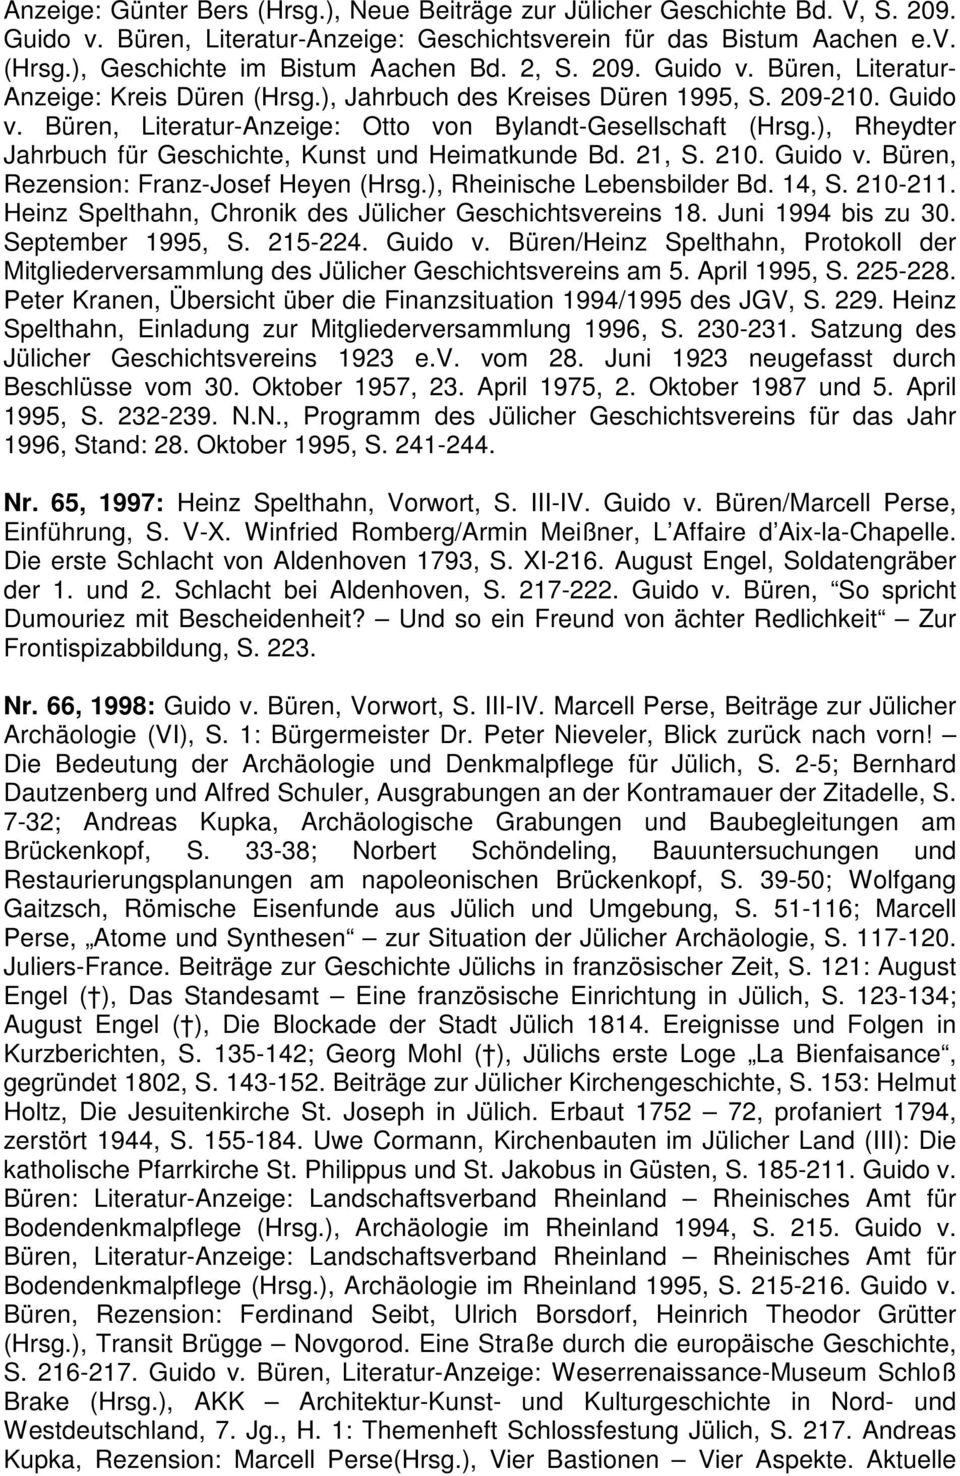 ), Rheydter Jahrbuch für Geschichte, Kunst und Heimatkunde Bd. 21, S. 210. Guido v. Büren, Rezension: Franz-Josef Heyen (Hrsg.), Rheinische Lebensbilder Bd. 14, S. 210-211.